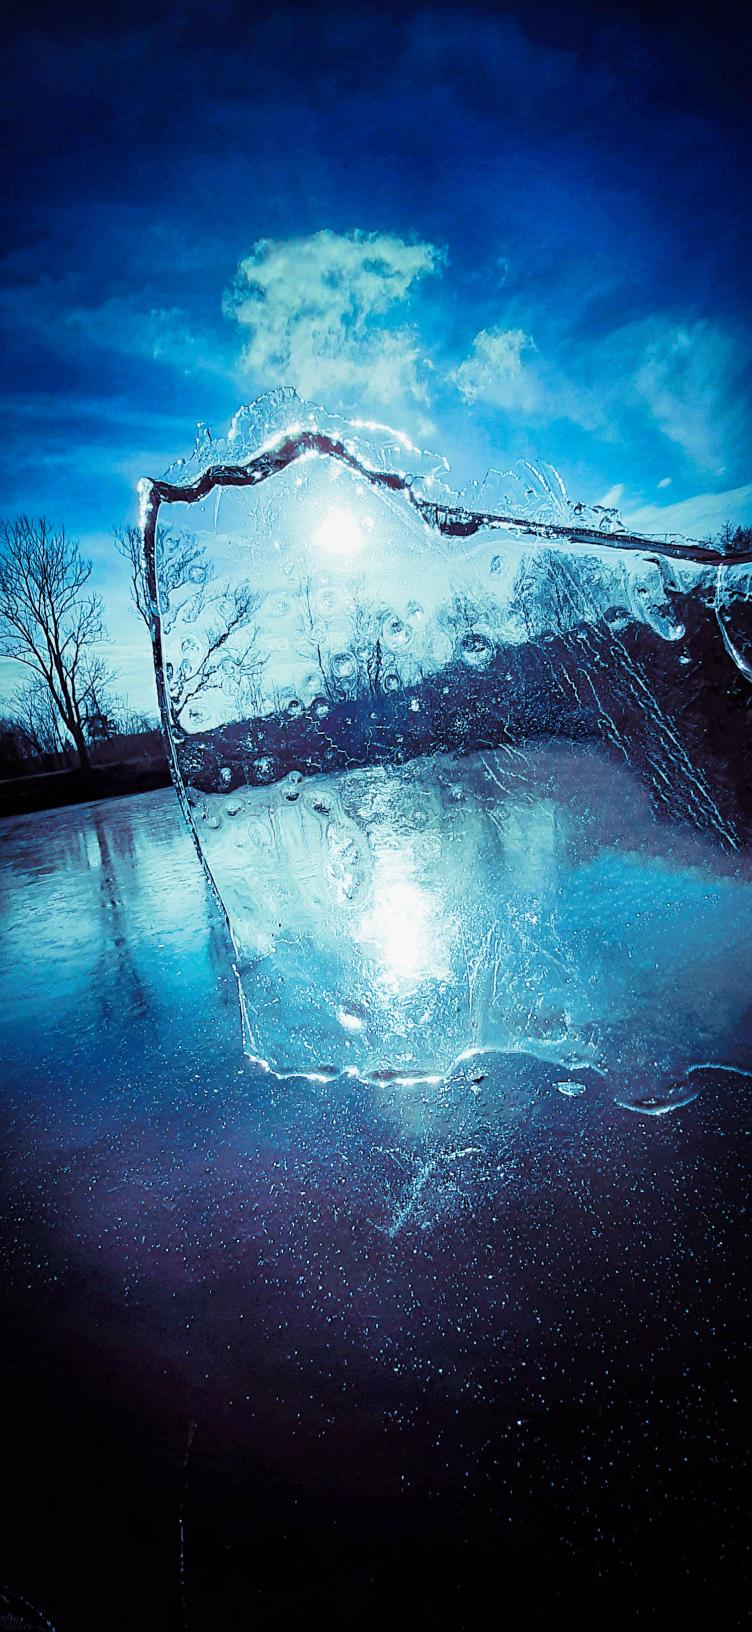 Zamrzlý rybník